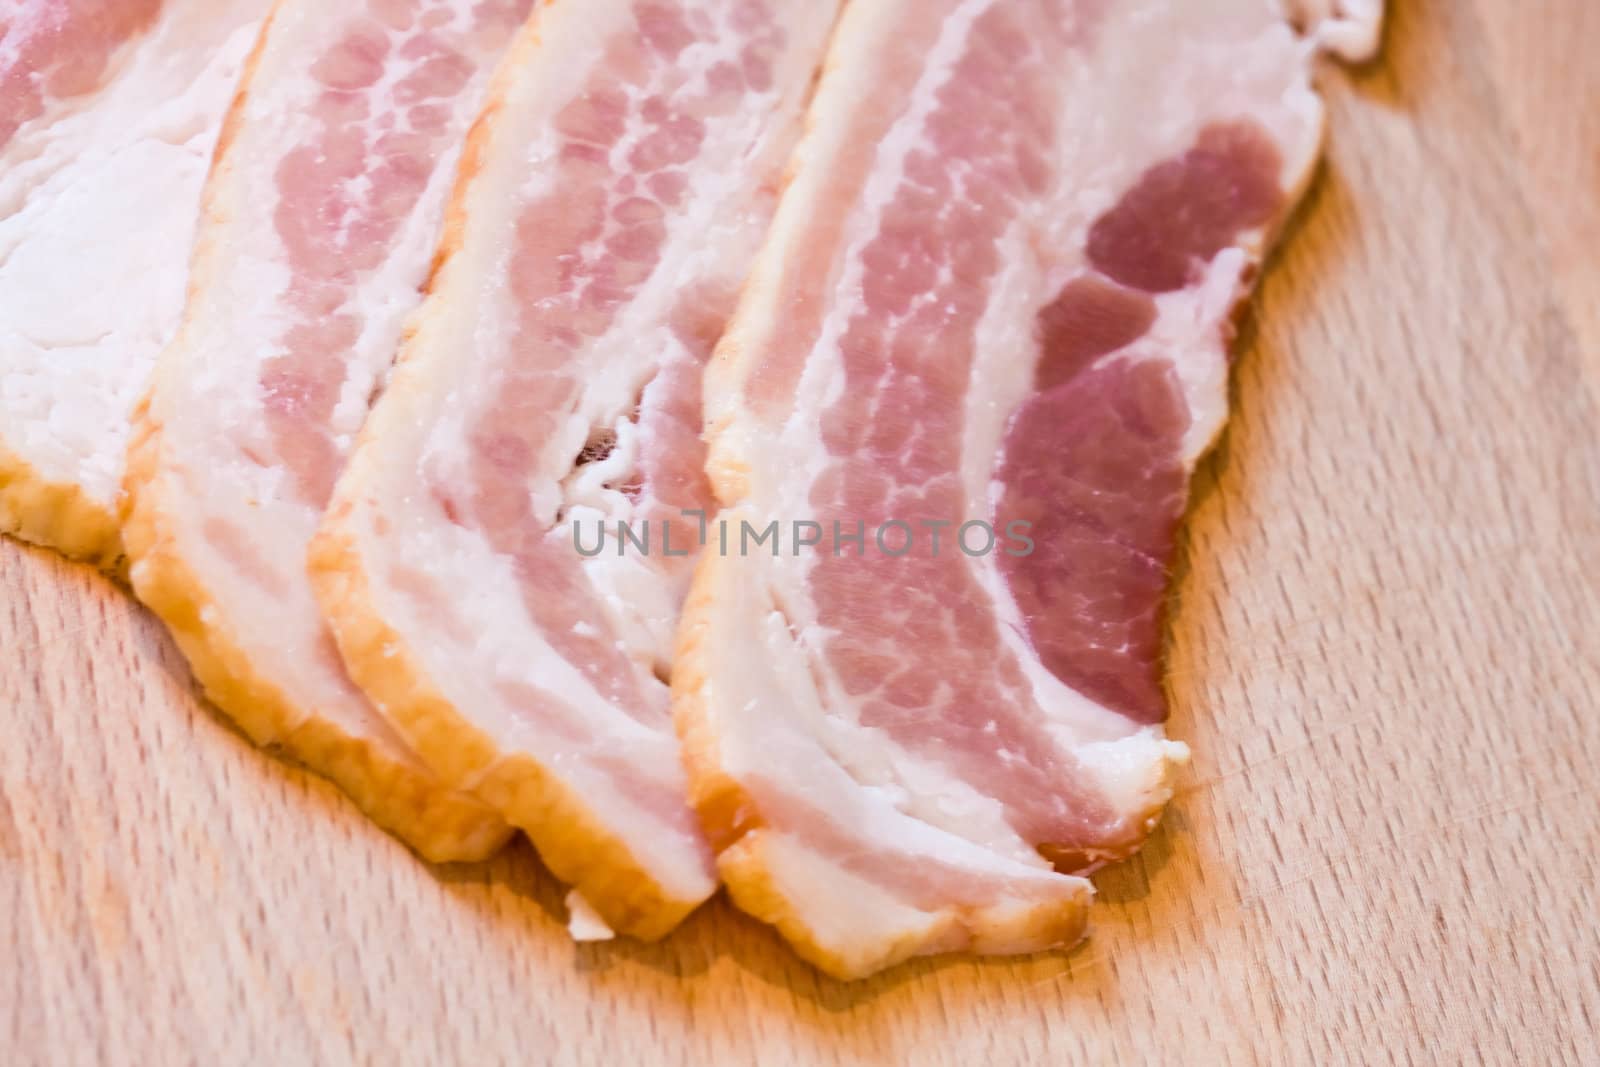 sliced raw bacon on a wood cutting board